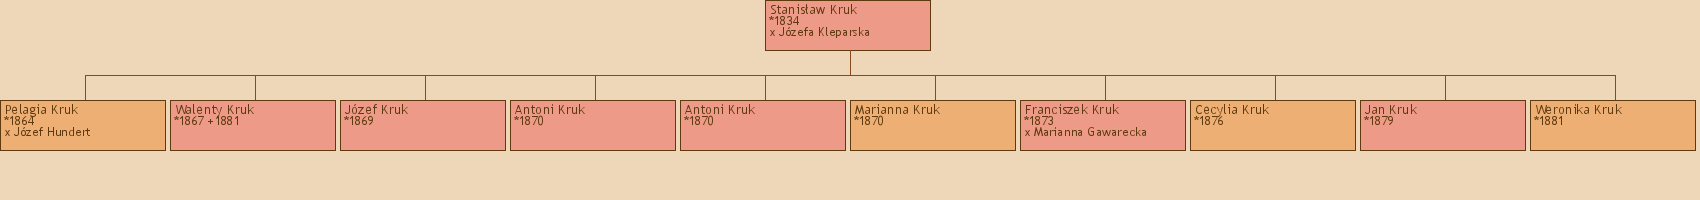 Drzewo genealogiczne - Stanisaw Kruk